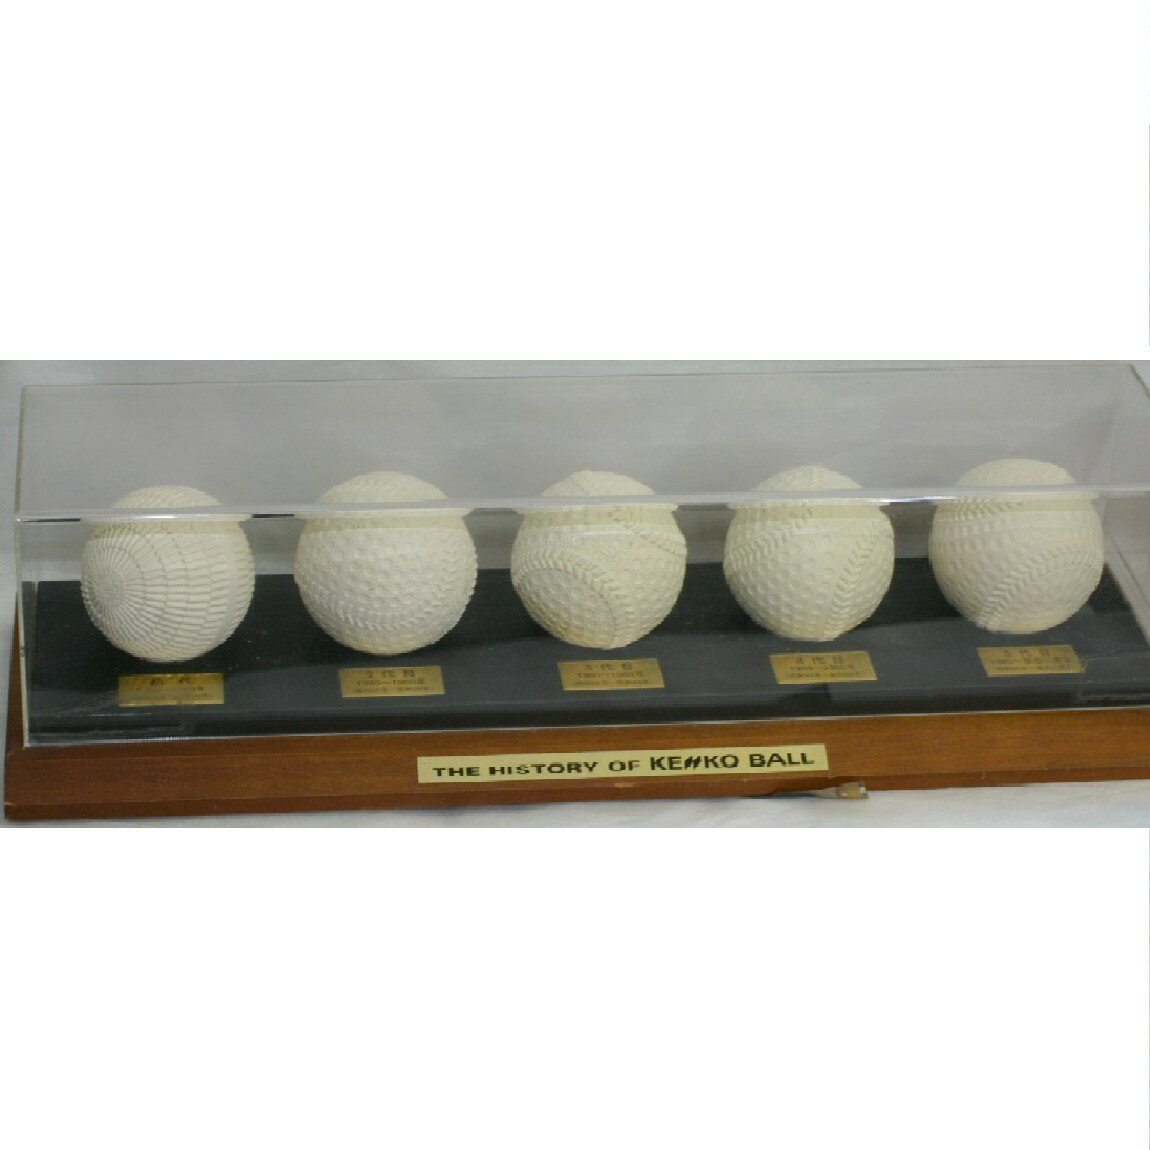 【中古】入手困難ケンコーの軟式野球ボール初代1938年から5代目1985年までのボール5個セット未使用品の画像